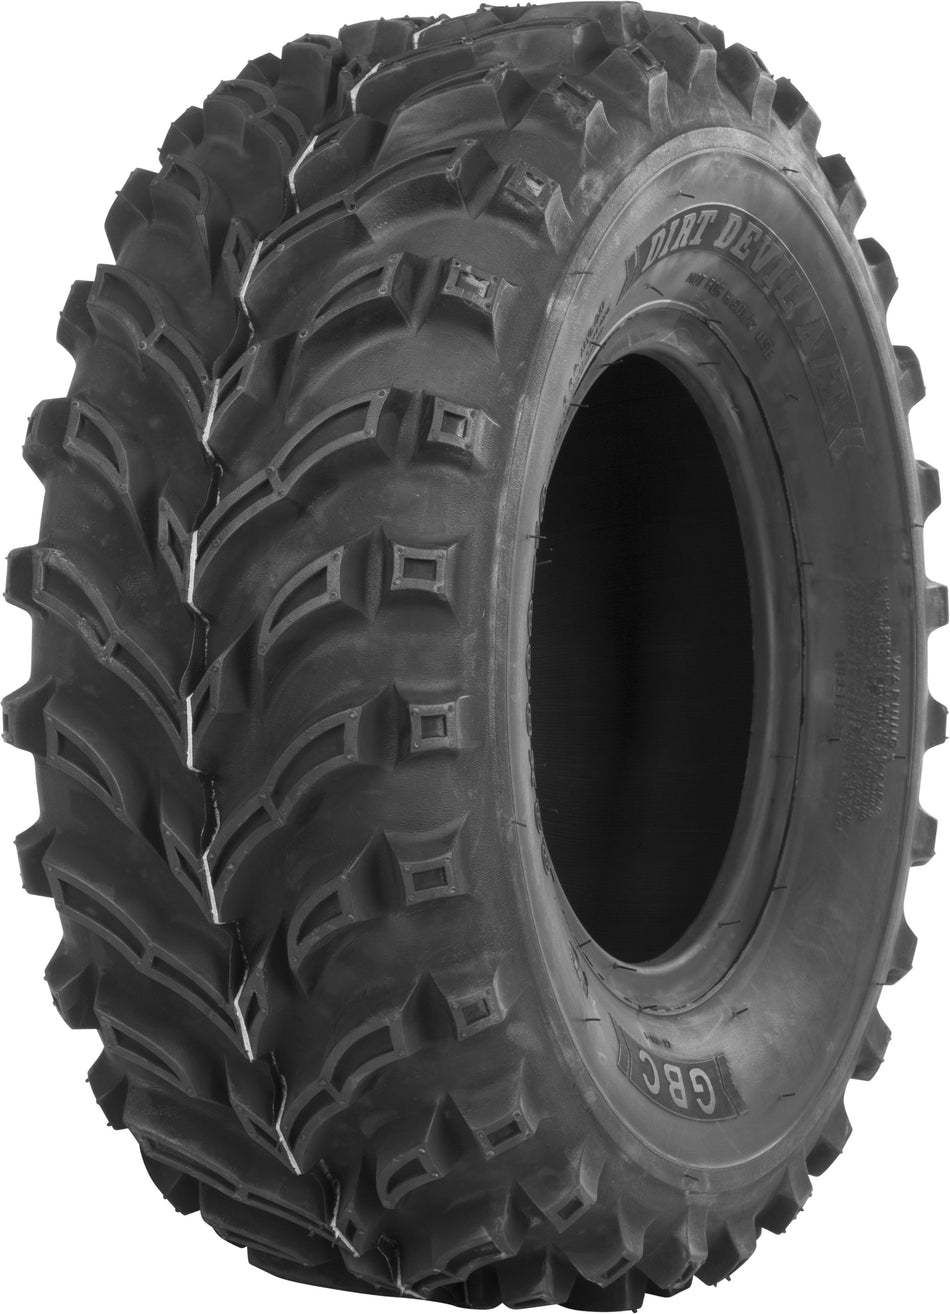 GBC Tire Dirt Devil X/T F/R 28x10-12 Bias Lr-450lbs AR1221